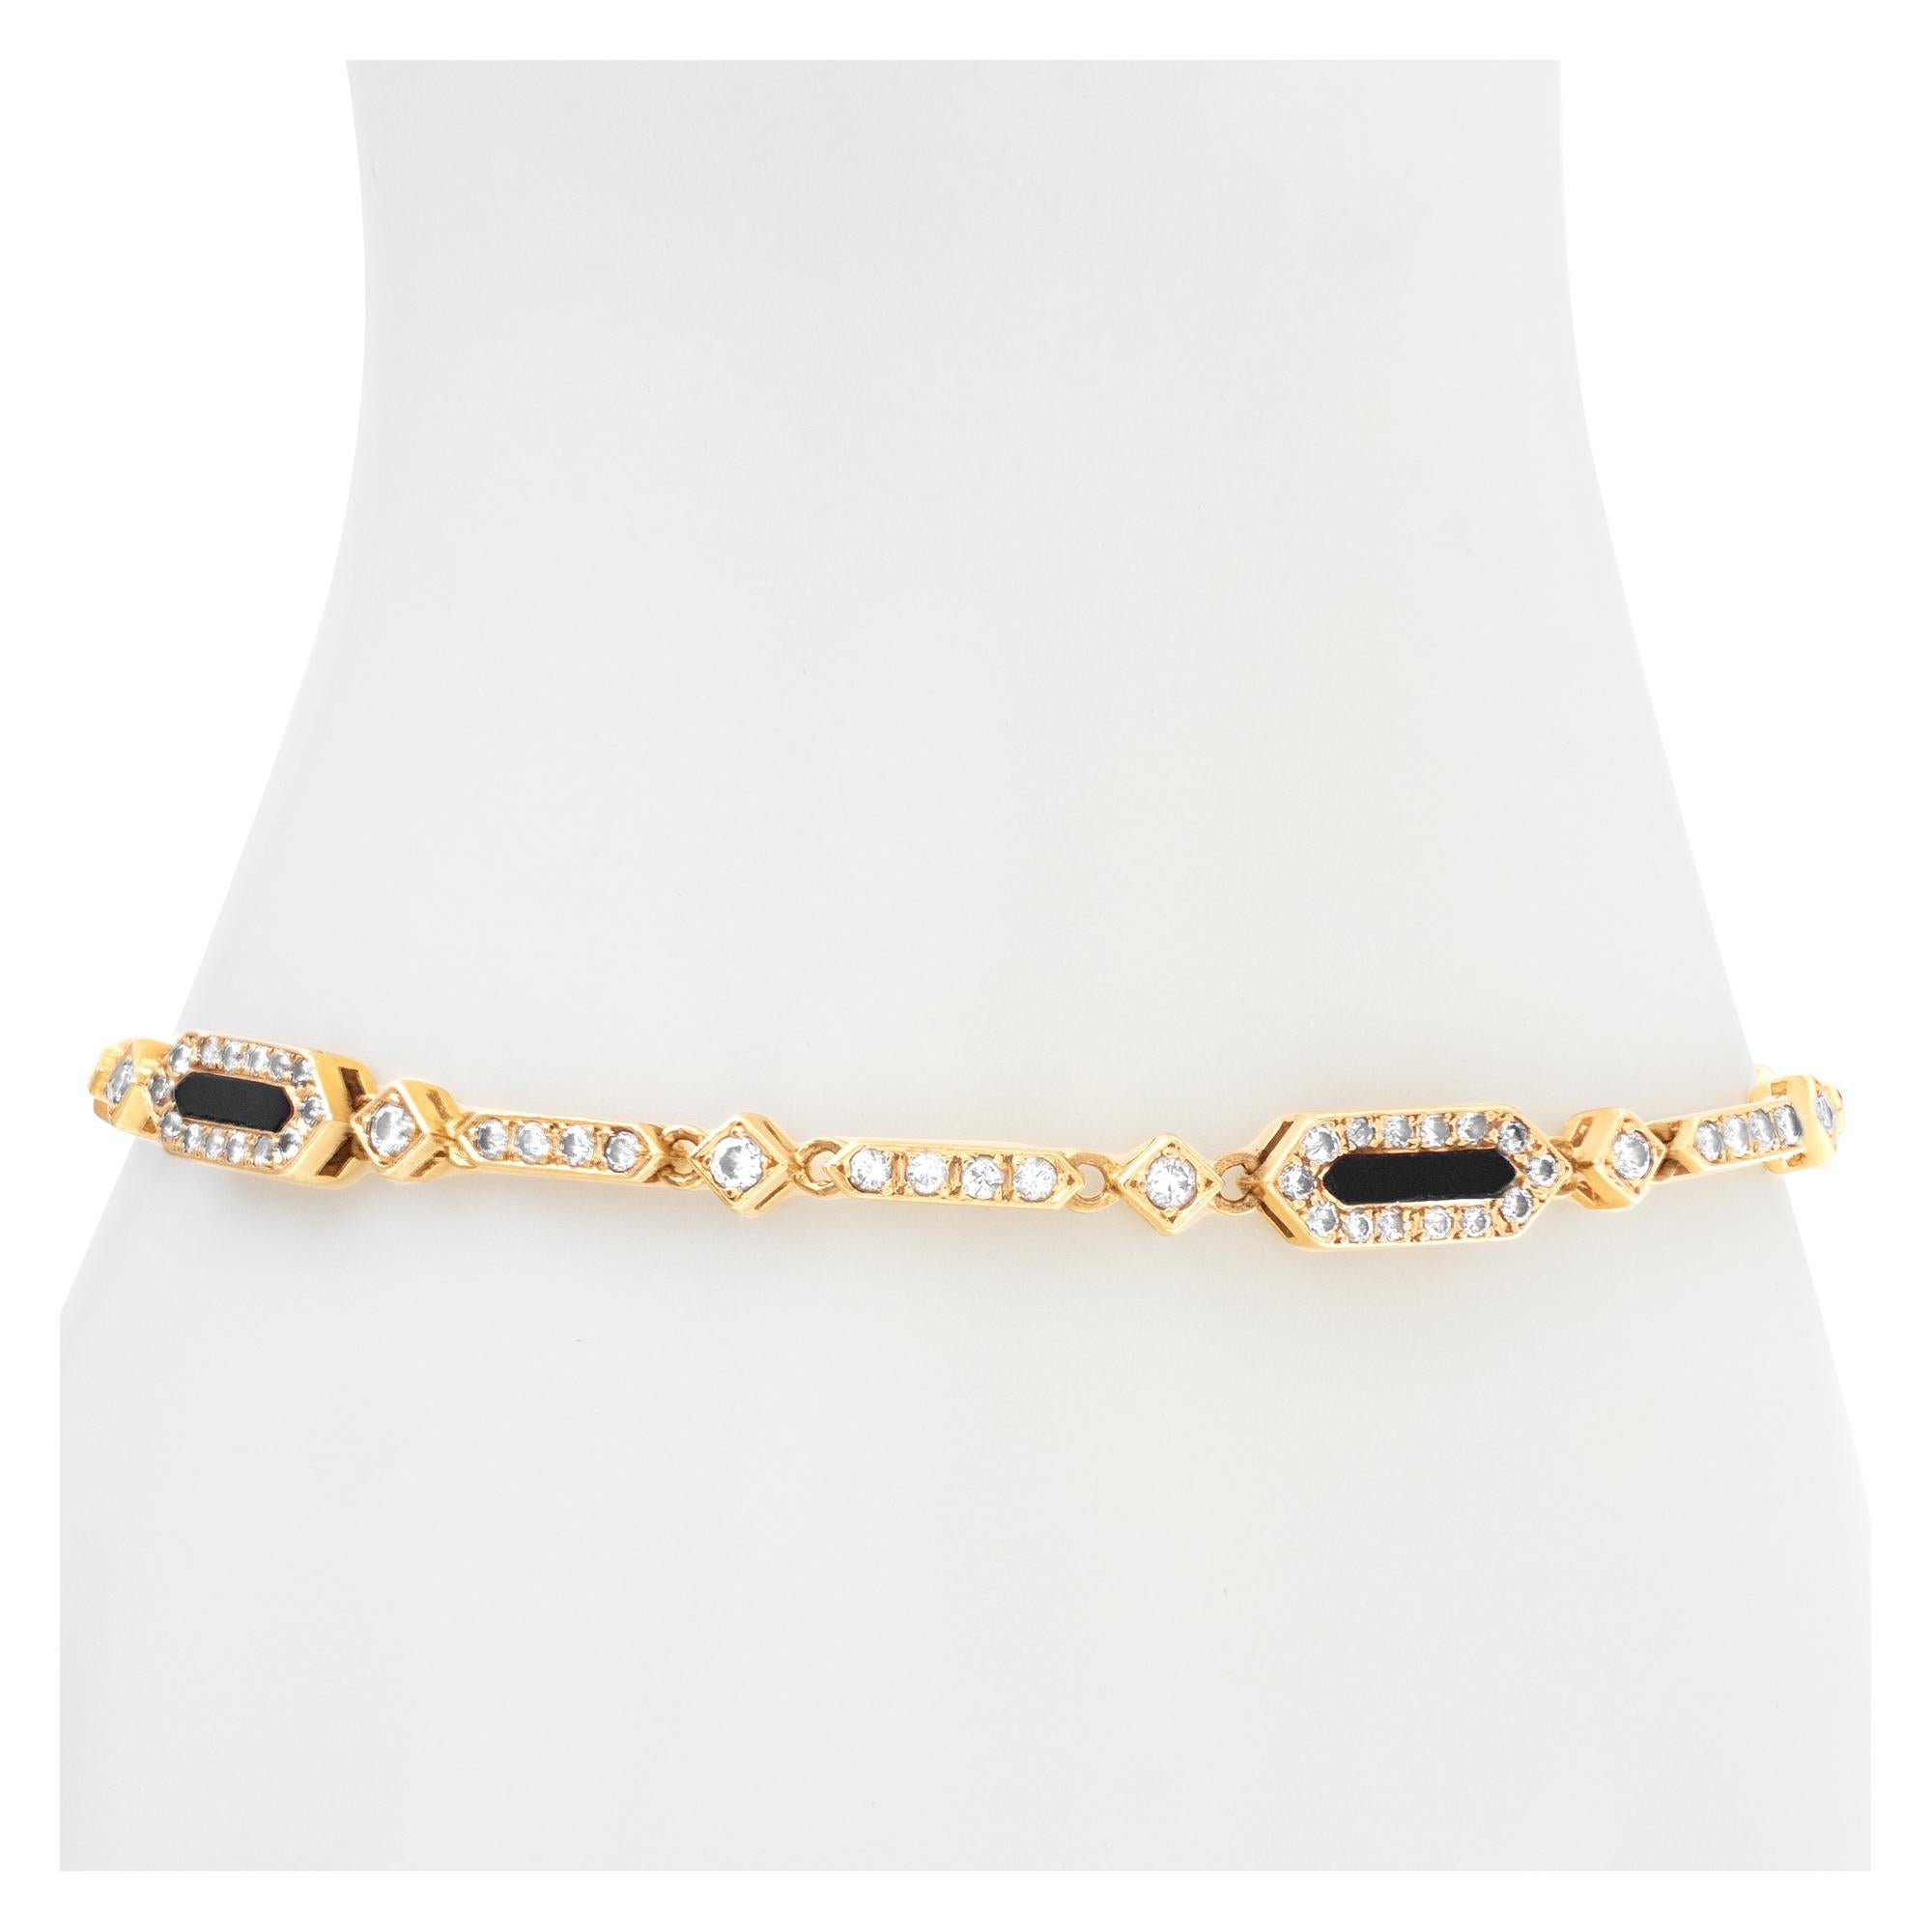 Elegantes Onyx- und Diamantarmband aus 18-karätigem Gold mit ca. 1,50 Karat Diamanten im Brillantschliff, Schätzung: Farbe G-H, Reinheit VS. Länge 7,25 Zoll mit Sicherheitskette.
